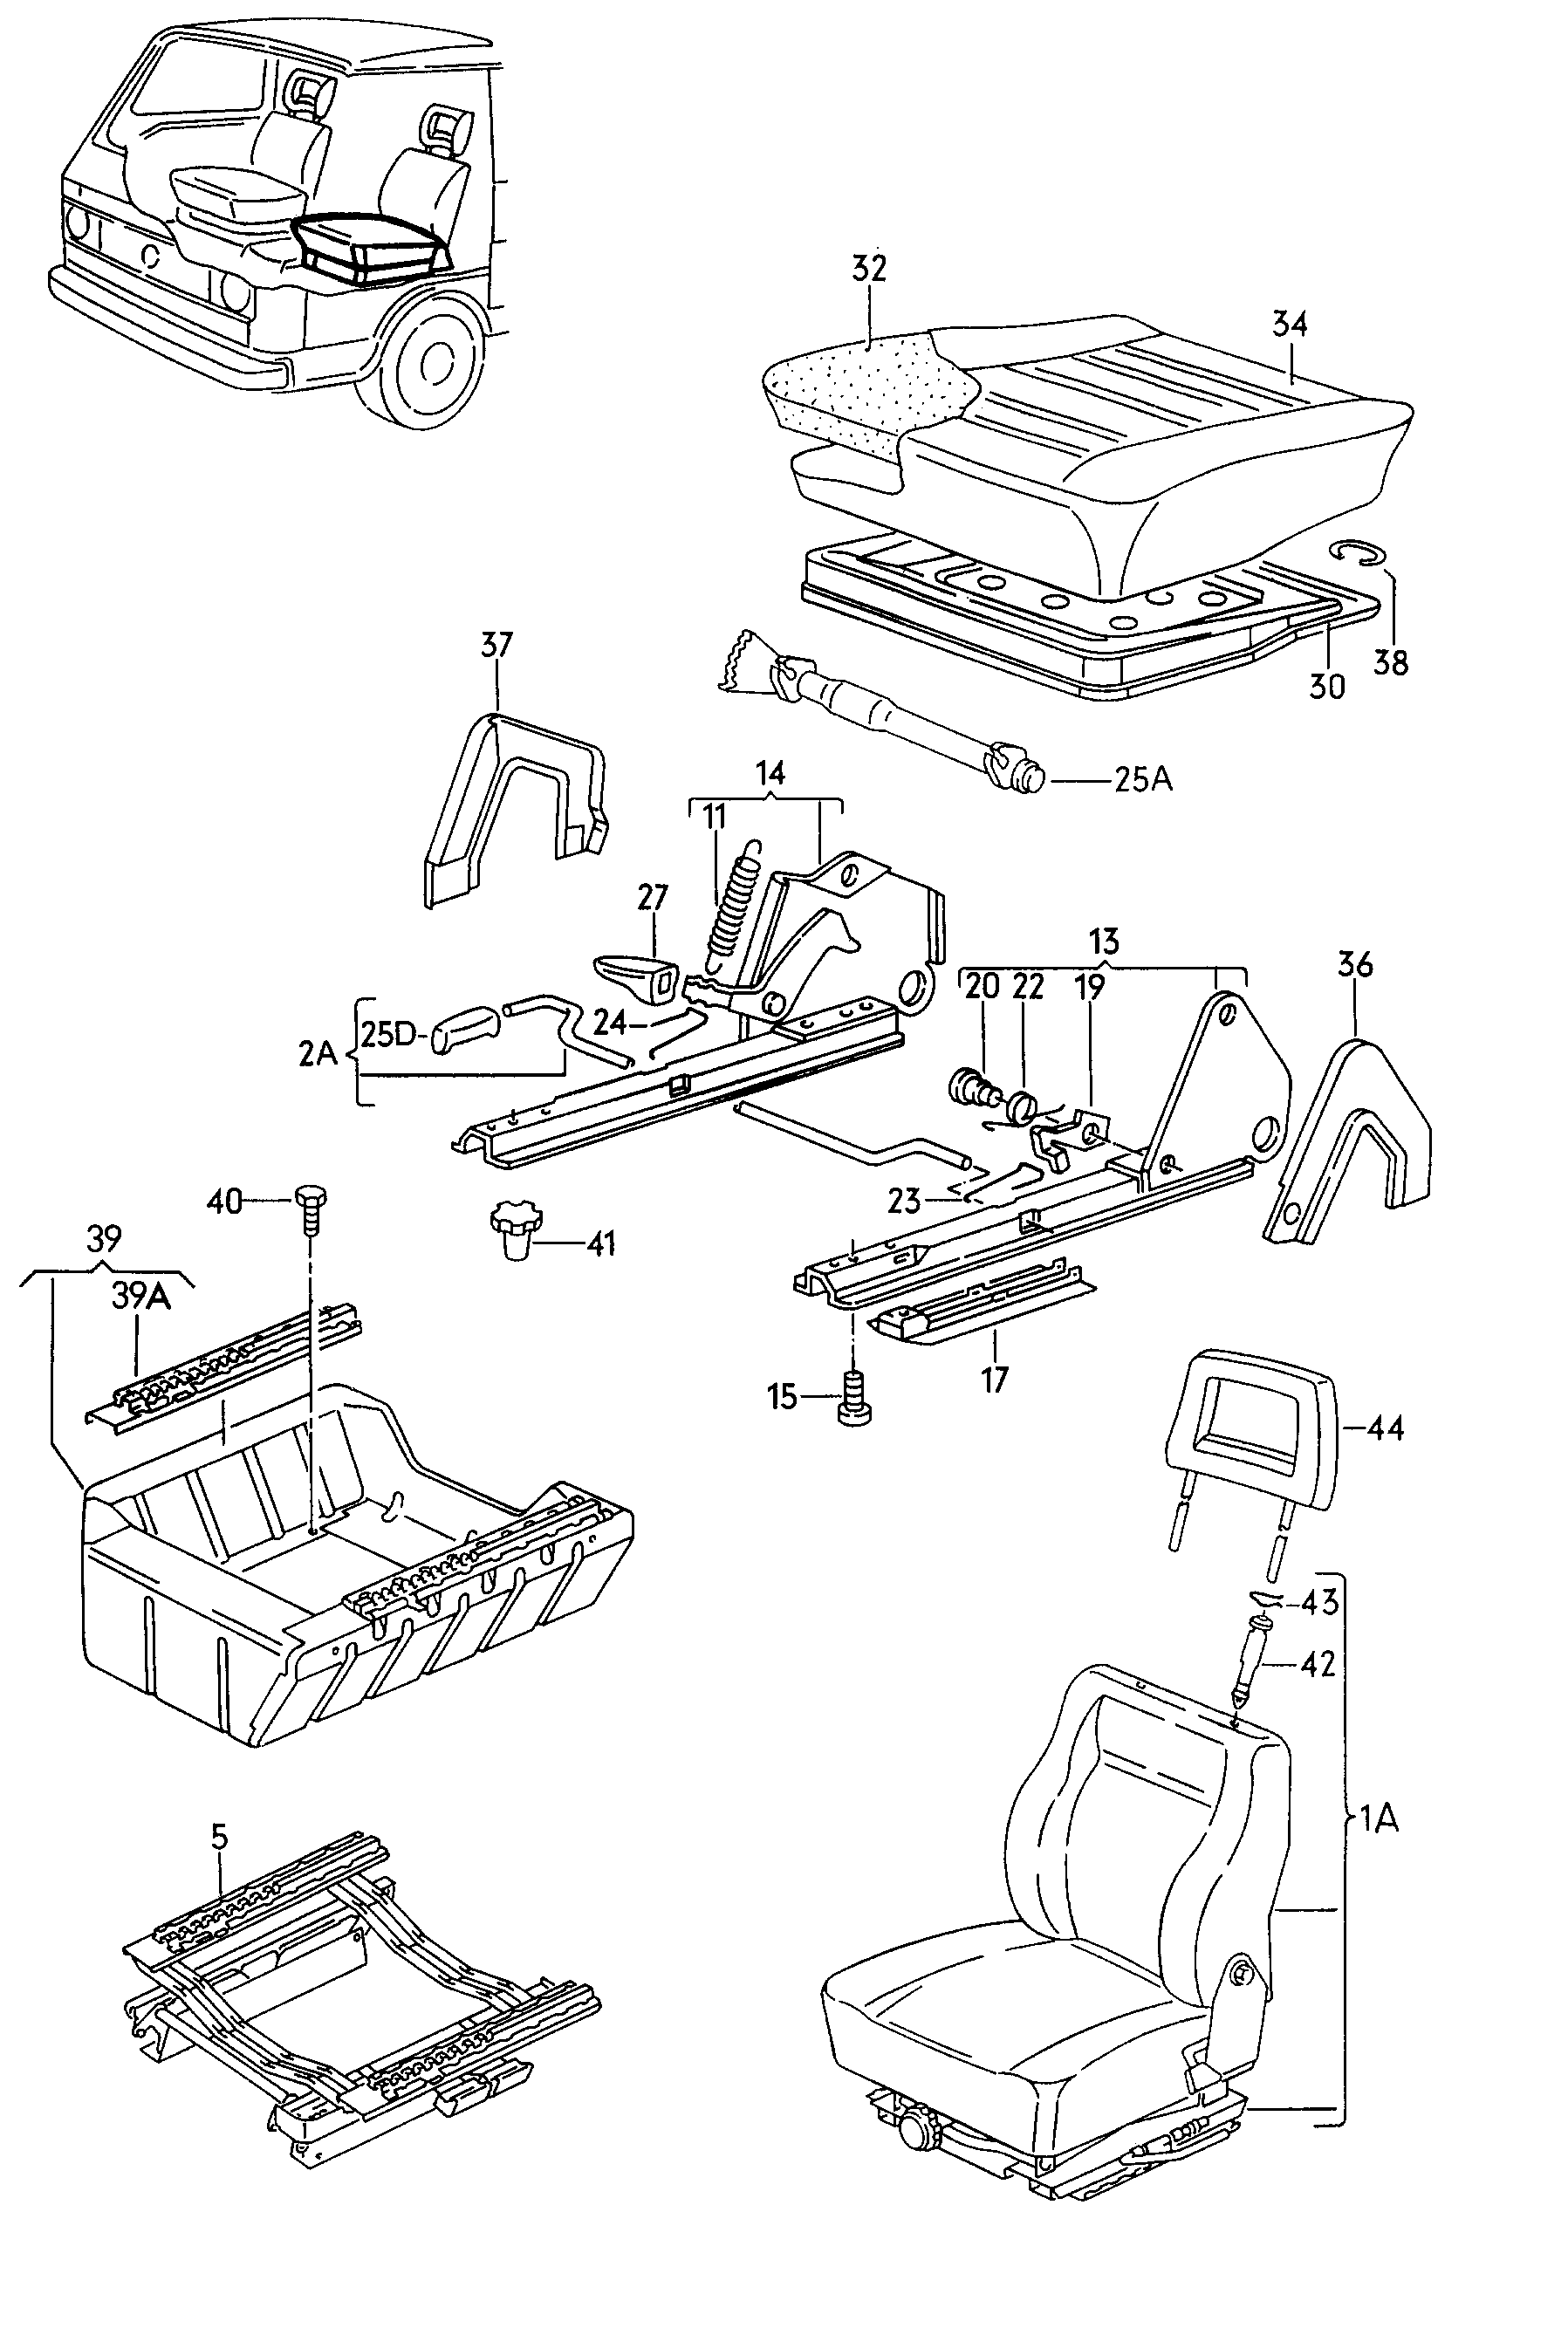 Siedzenie lewo-przod(pojedynczy) - LT, LT 4x4 - lt